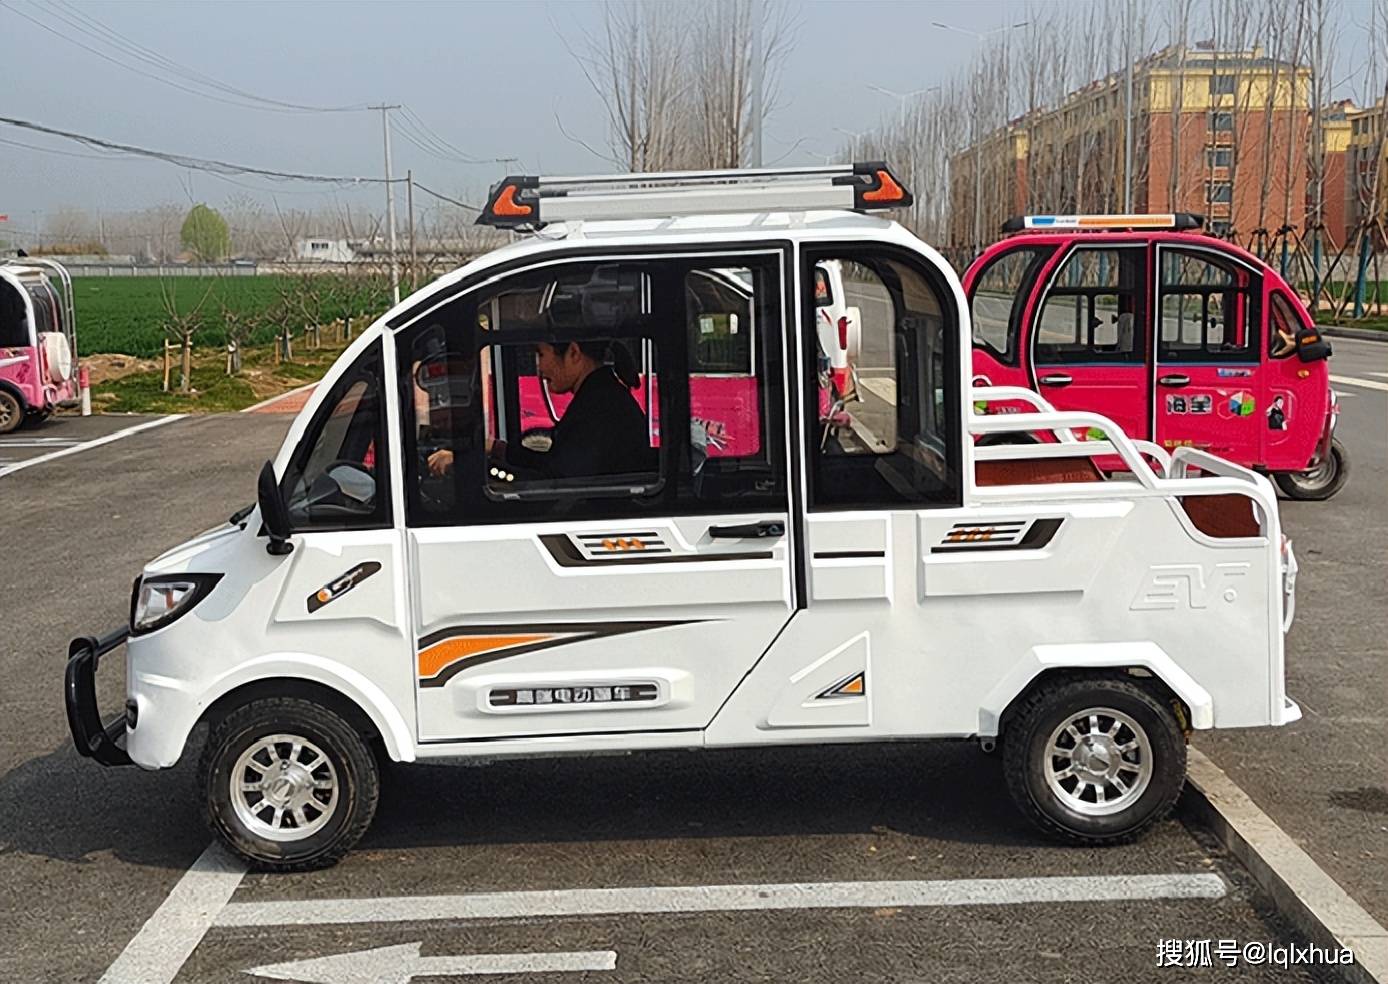 这款江苏宗申新发布的低速四轮电动车 最大续航120公里 价格只需9000起_搜狐汽车_搜狐网